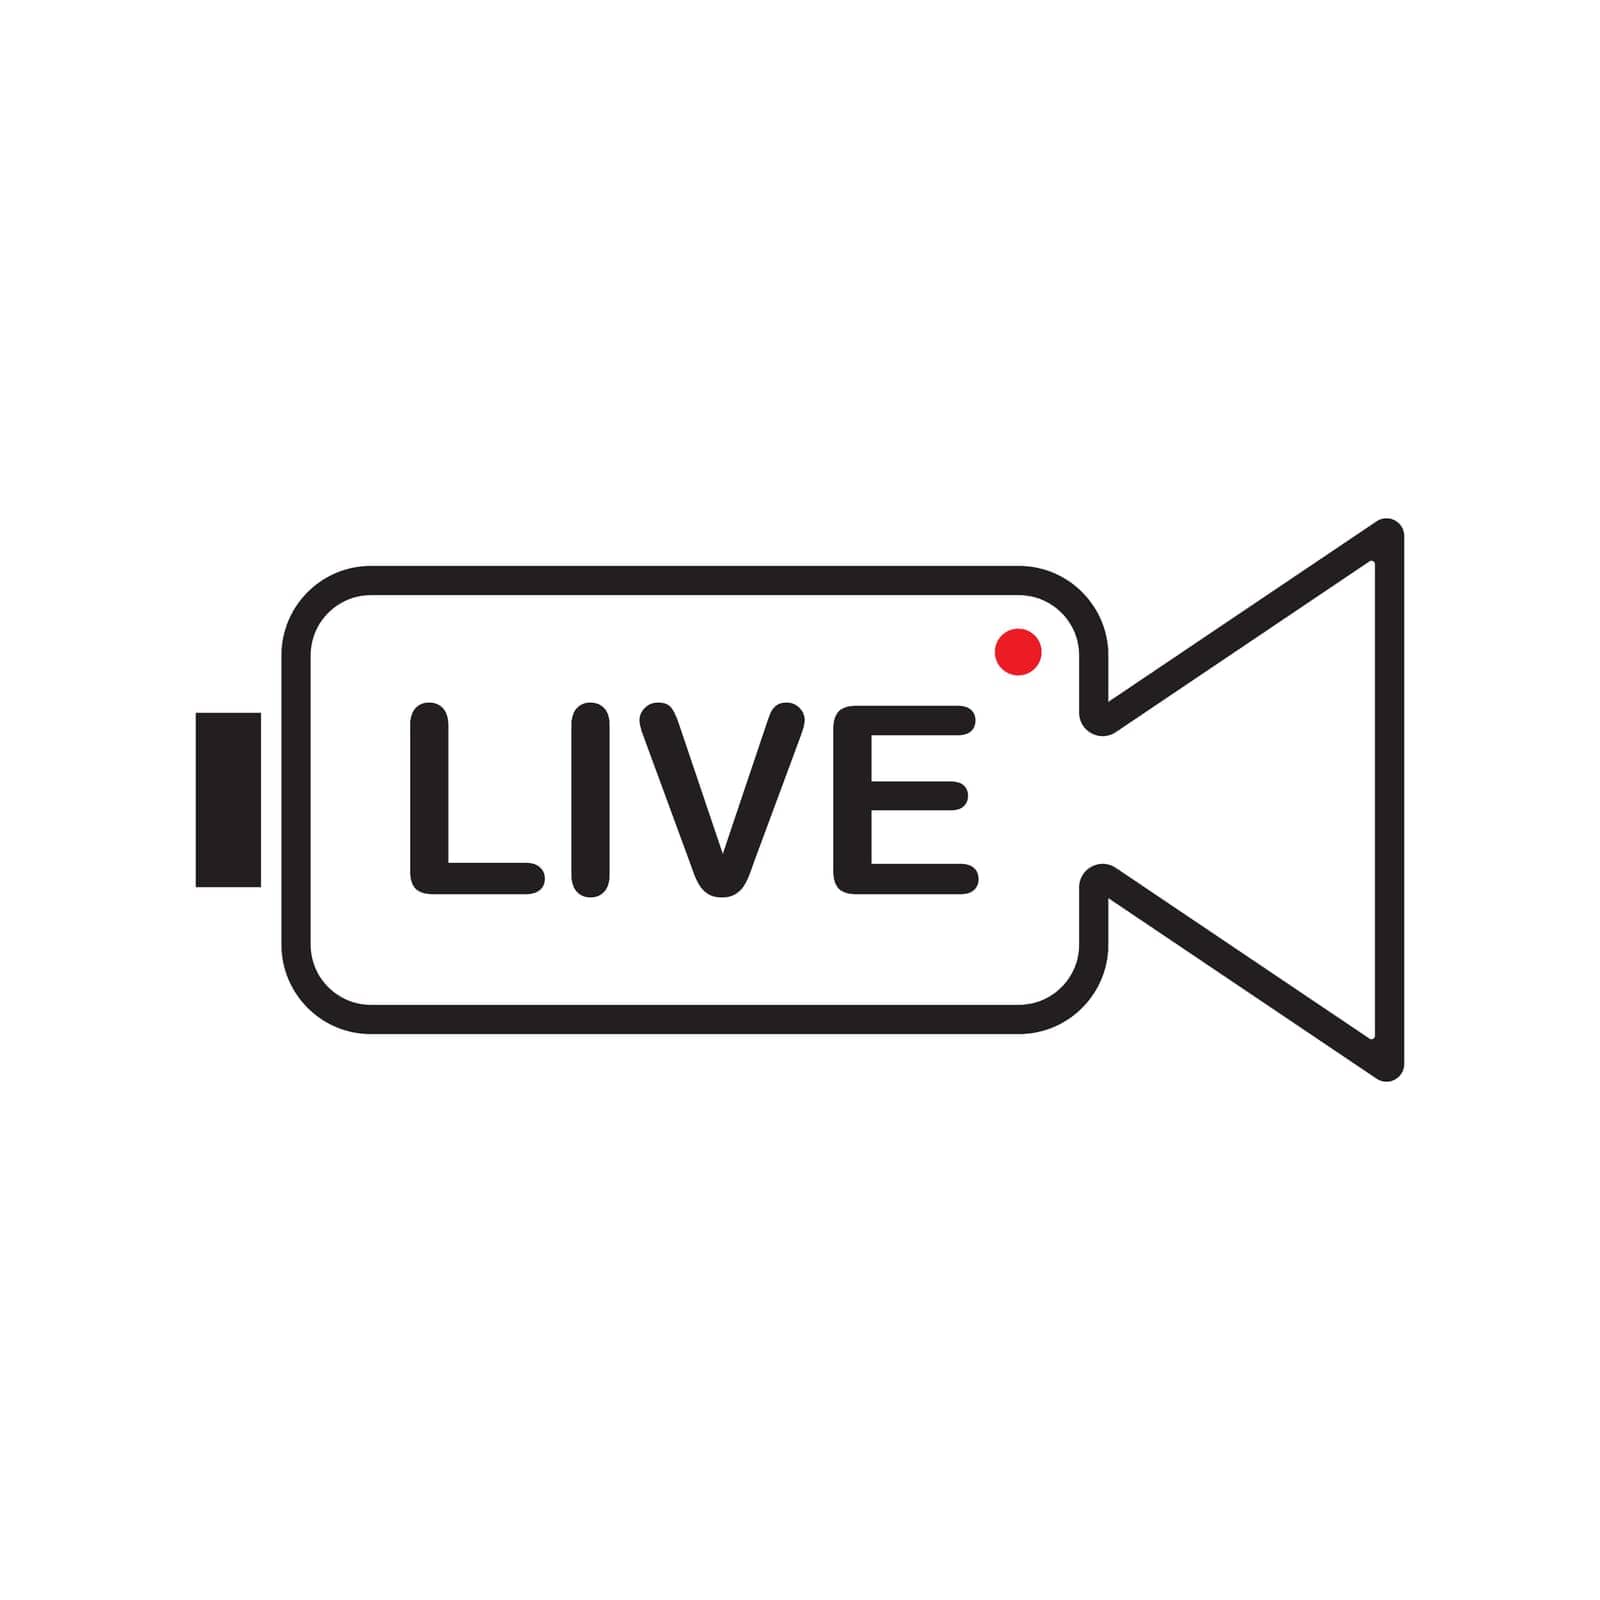 live icon vector illustration symbol design